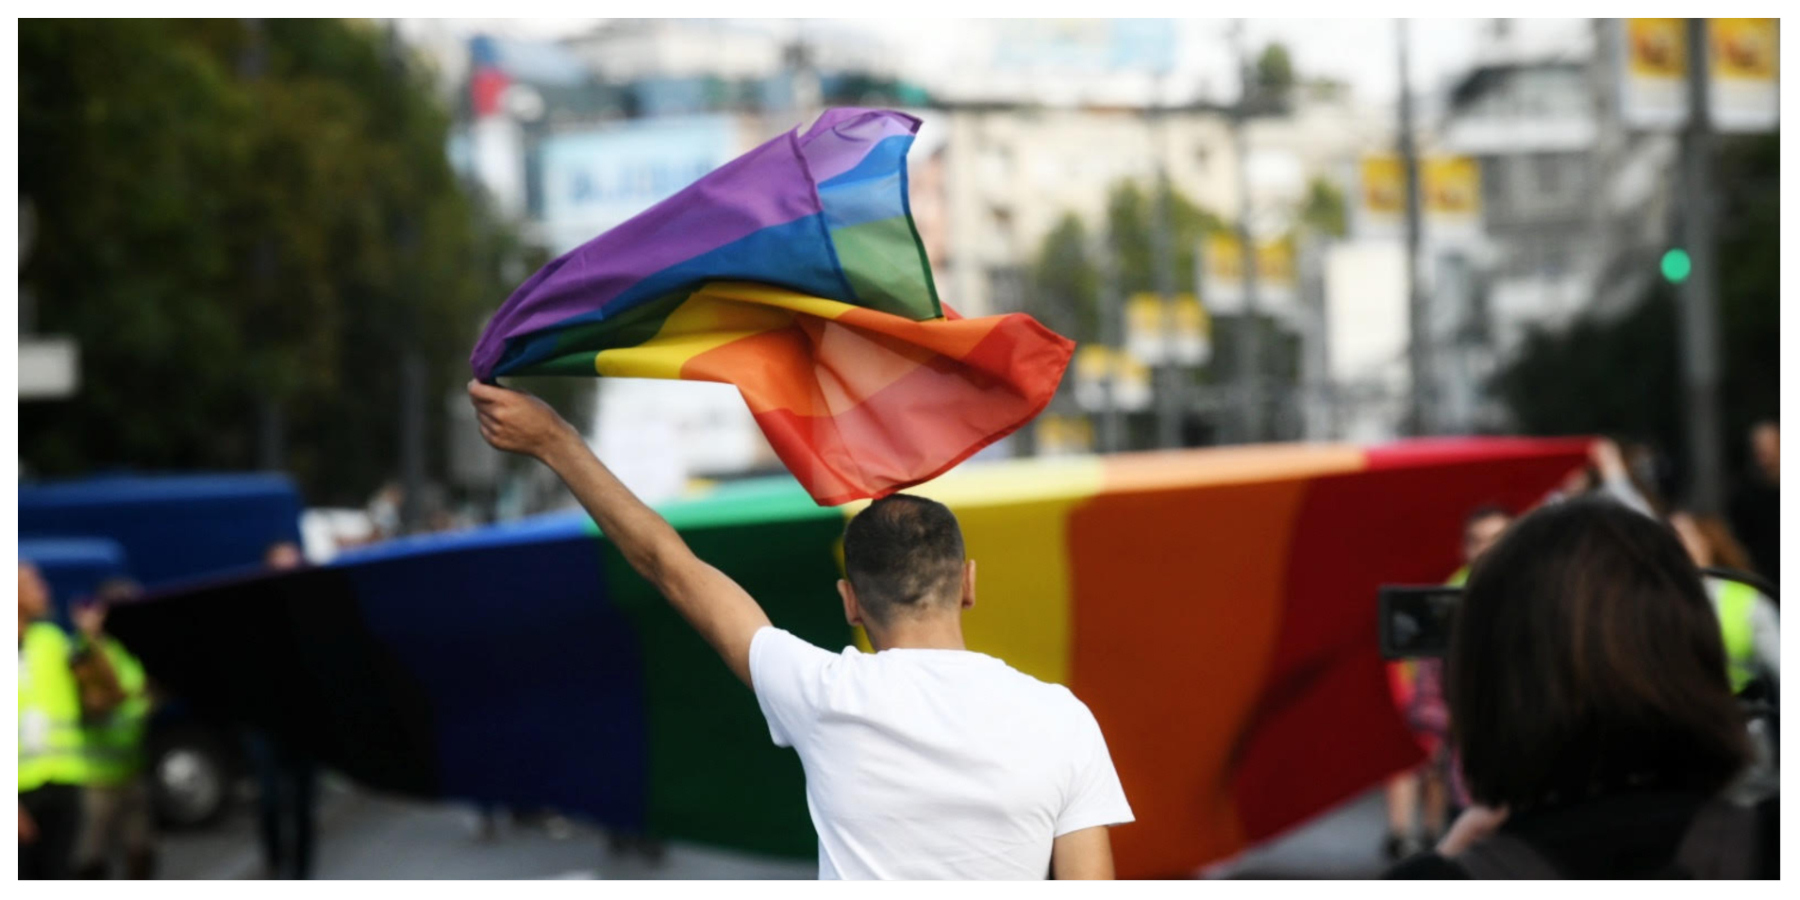 Prvi EuroPride u jugoistočnoj Evropi održava se u septembru u Beogradu